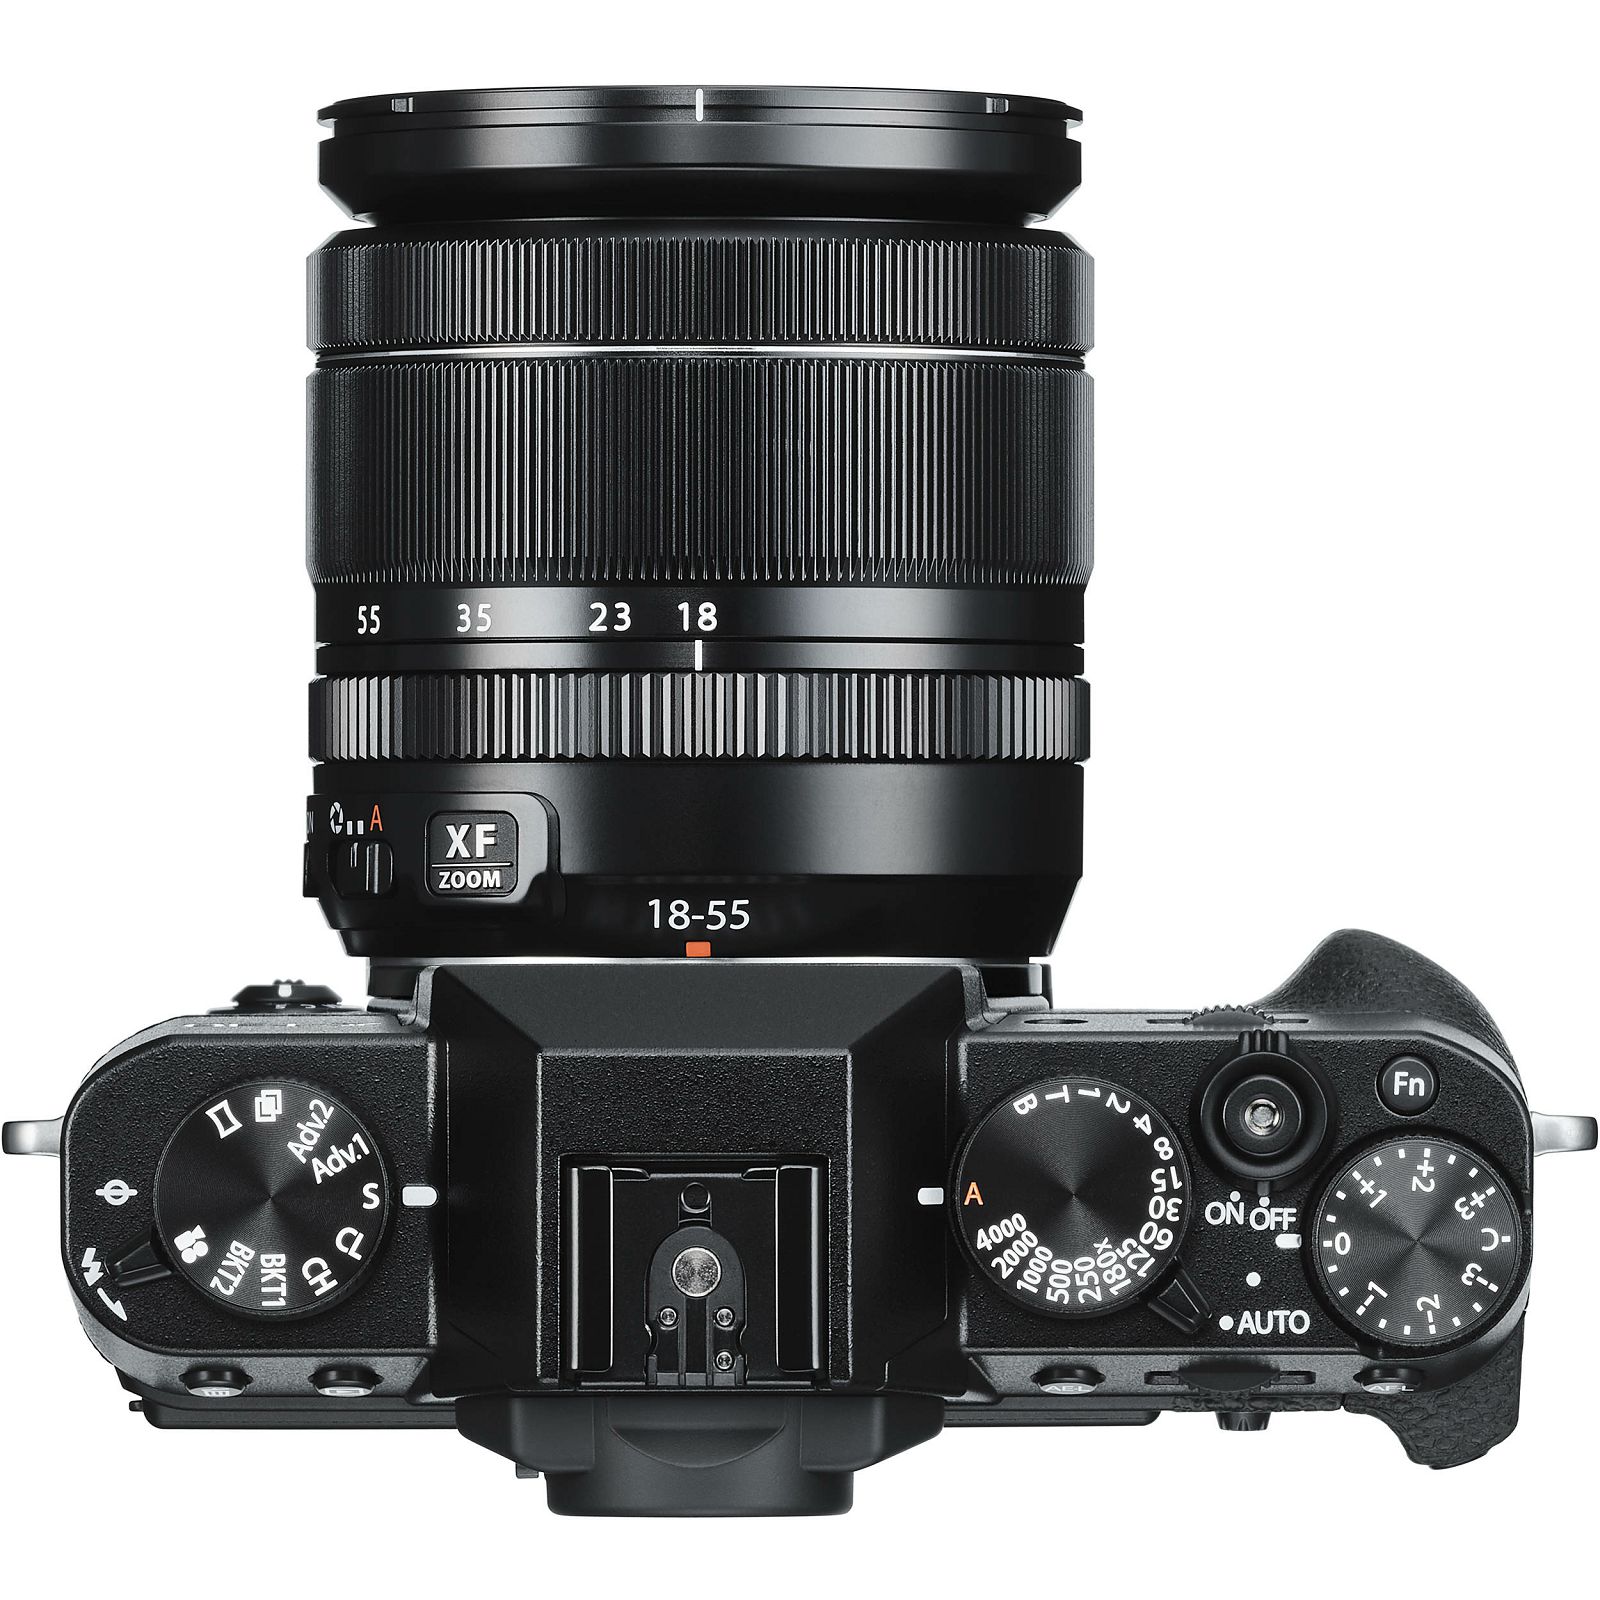 Fujifilm X-T30 + XF 18-55 f2.8-4 R LM OIS Black crni digitalni mirrorless fotoaparat s objektivom 18-55mm Fuji (16619982)